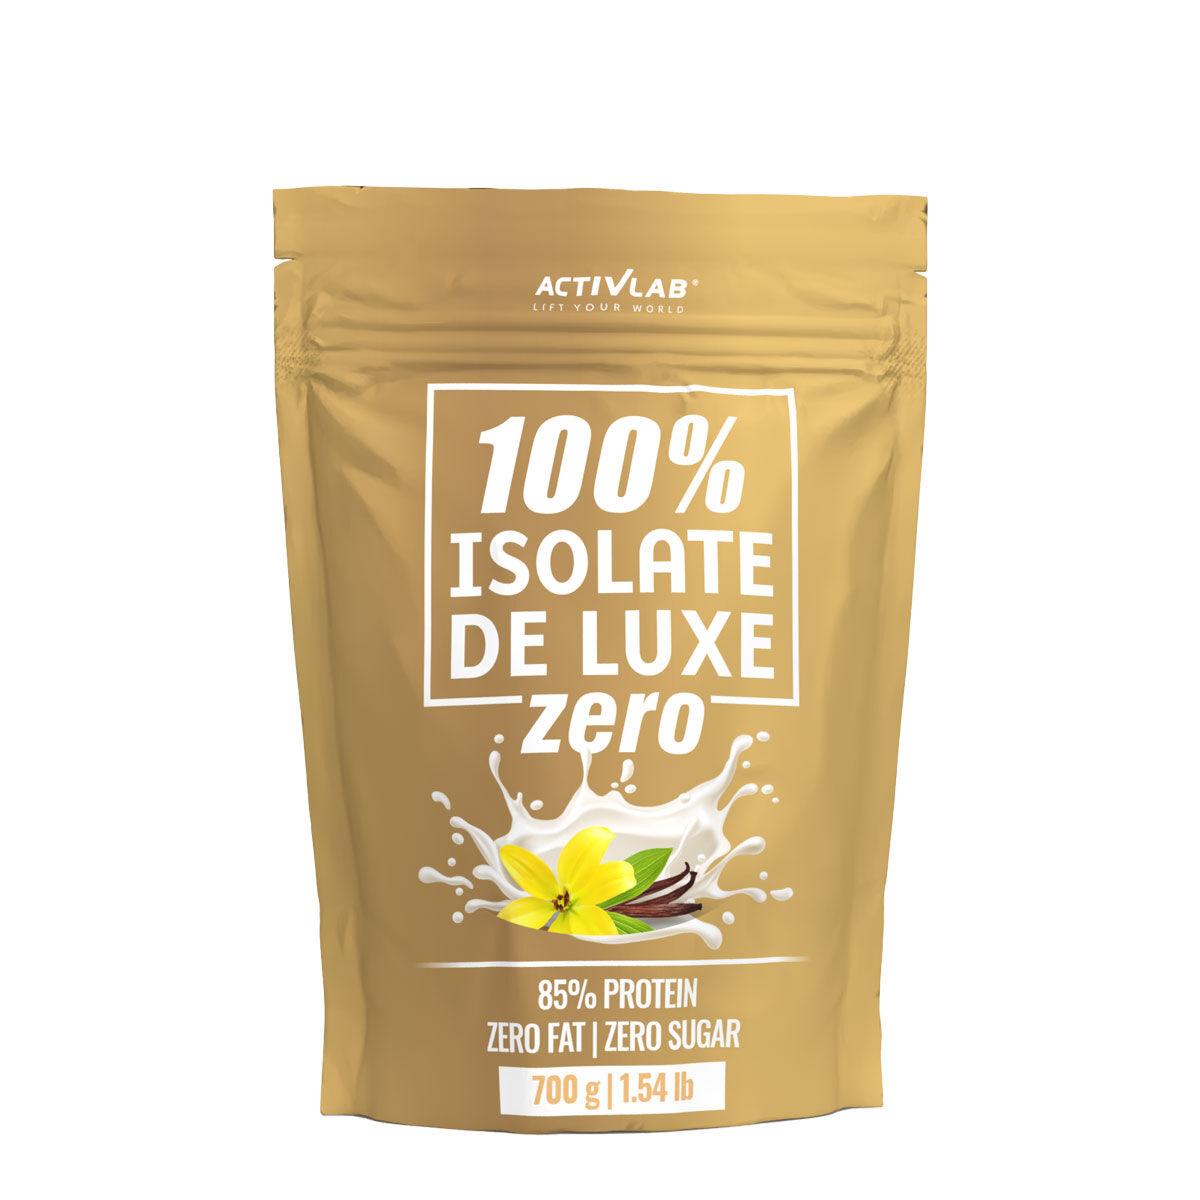 ACTIVLAB Whey protein Isolate 100% de Luxe zero vanila 700g